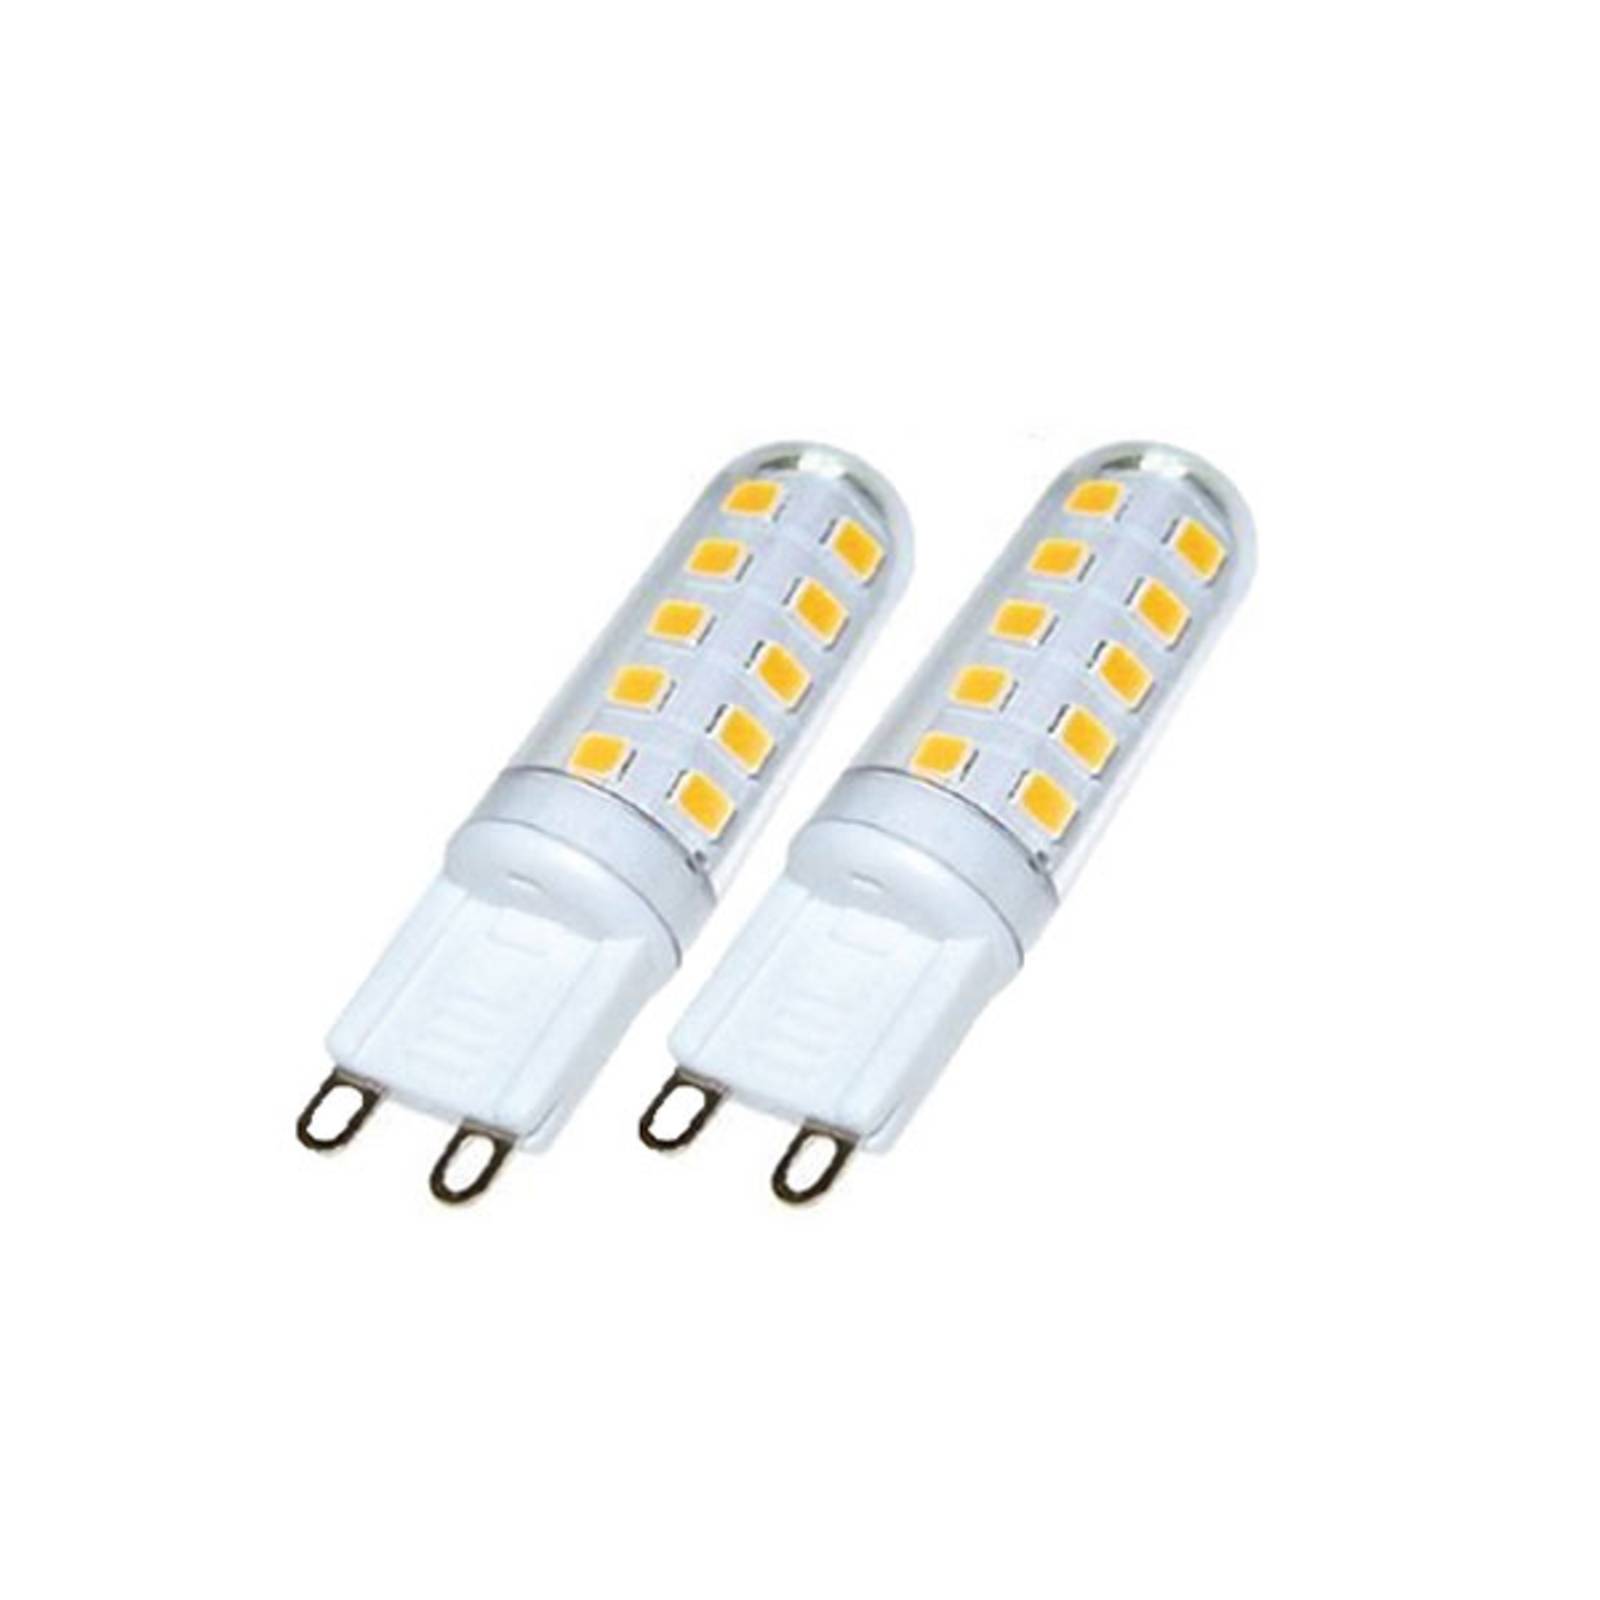 LED-lampe med stiftsokkel G9 3W 3000 K eksternt dimbar sett med 2 stk